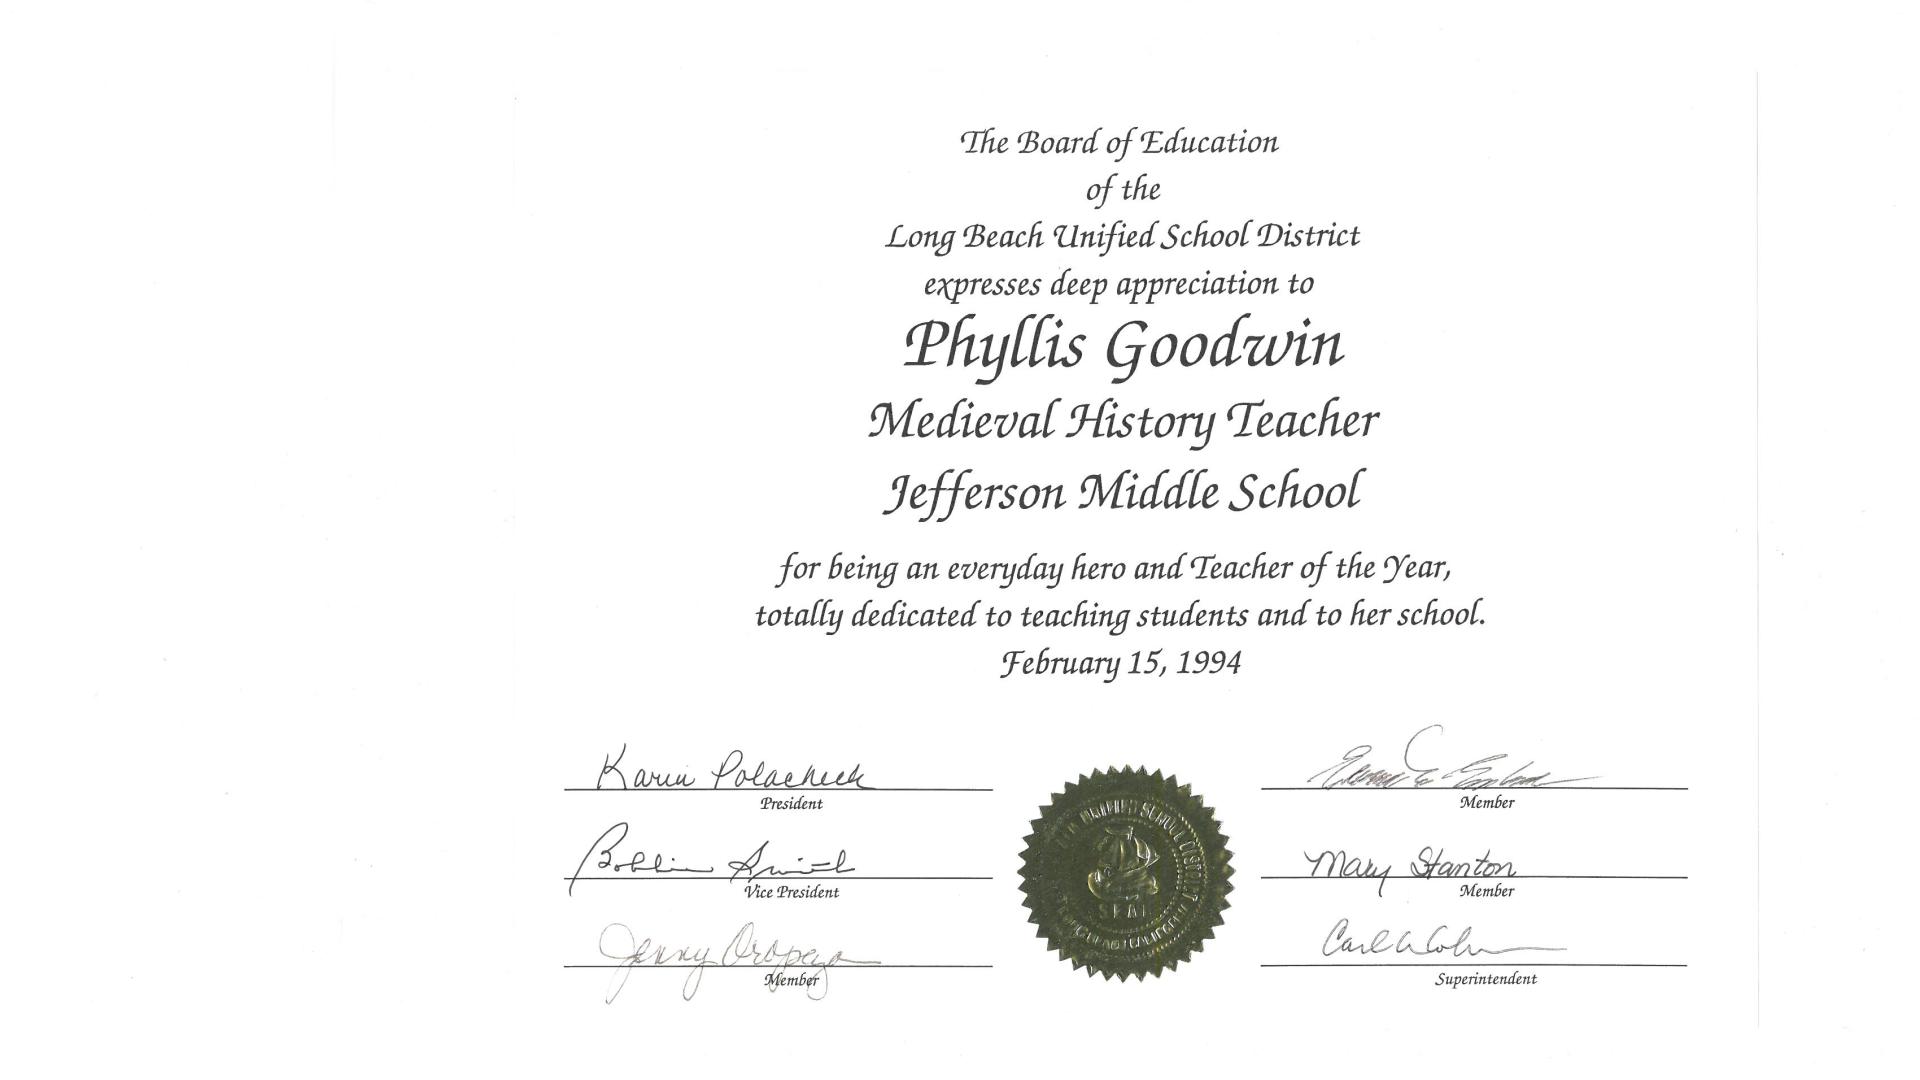 Phyllis received an award